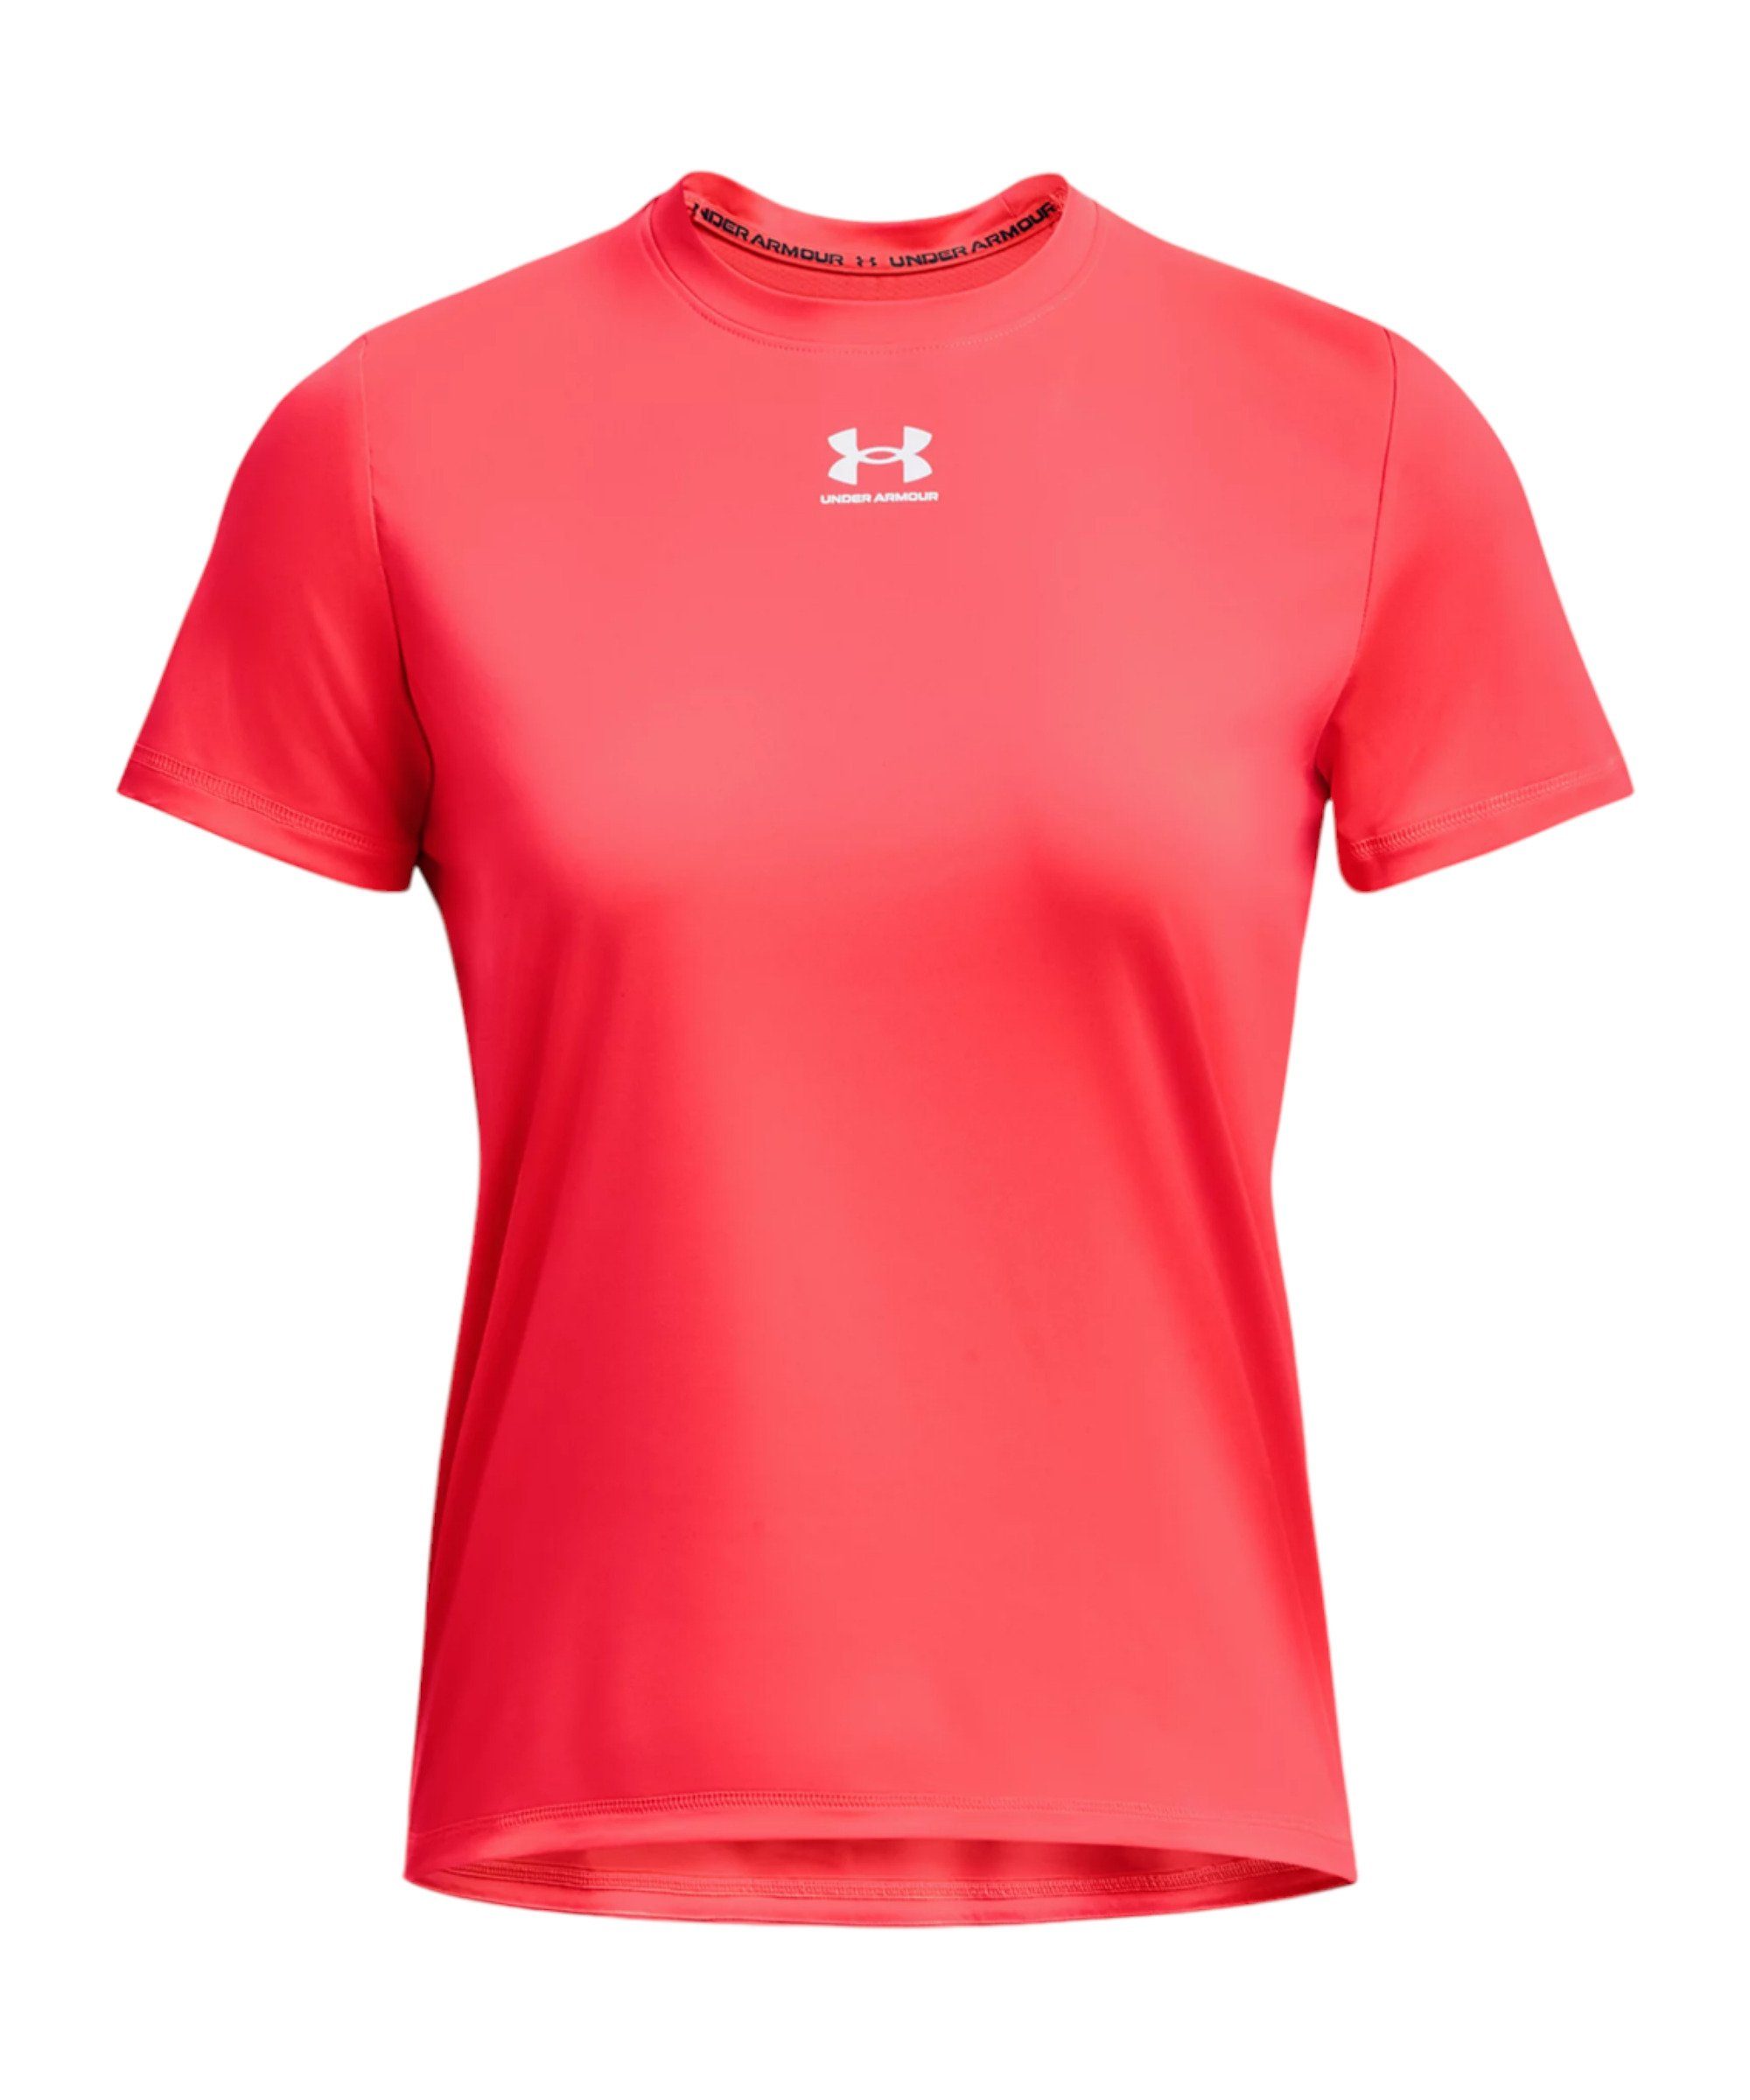 Pro Damen Under default Armour® Funktionsshirt rot T-Shirt